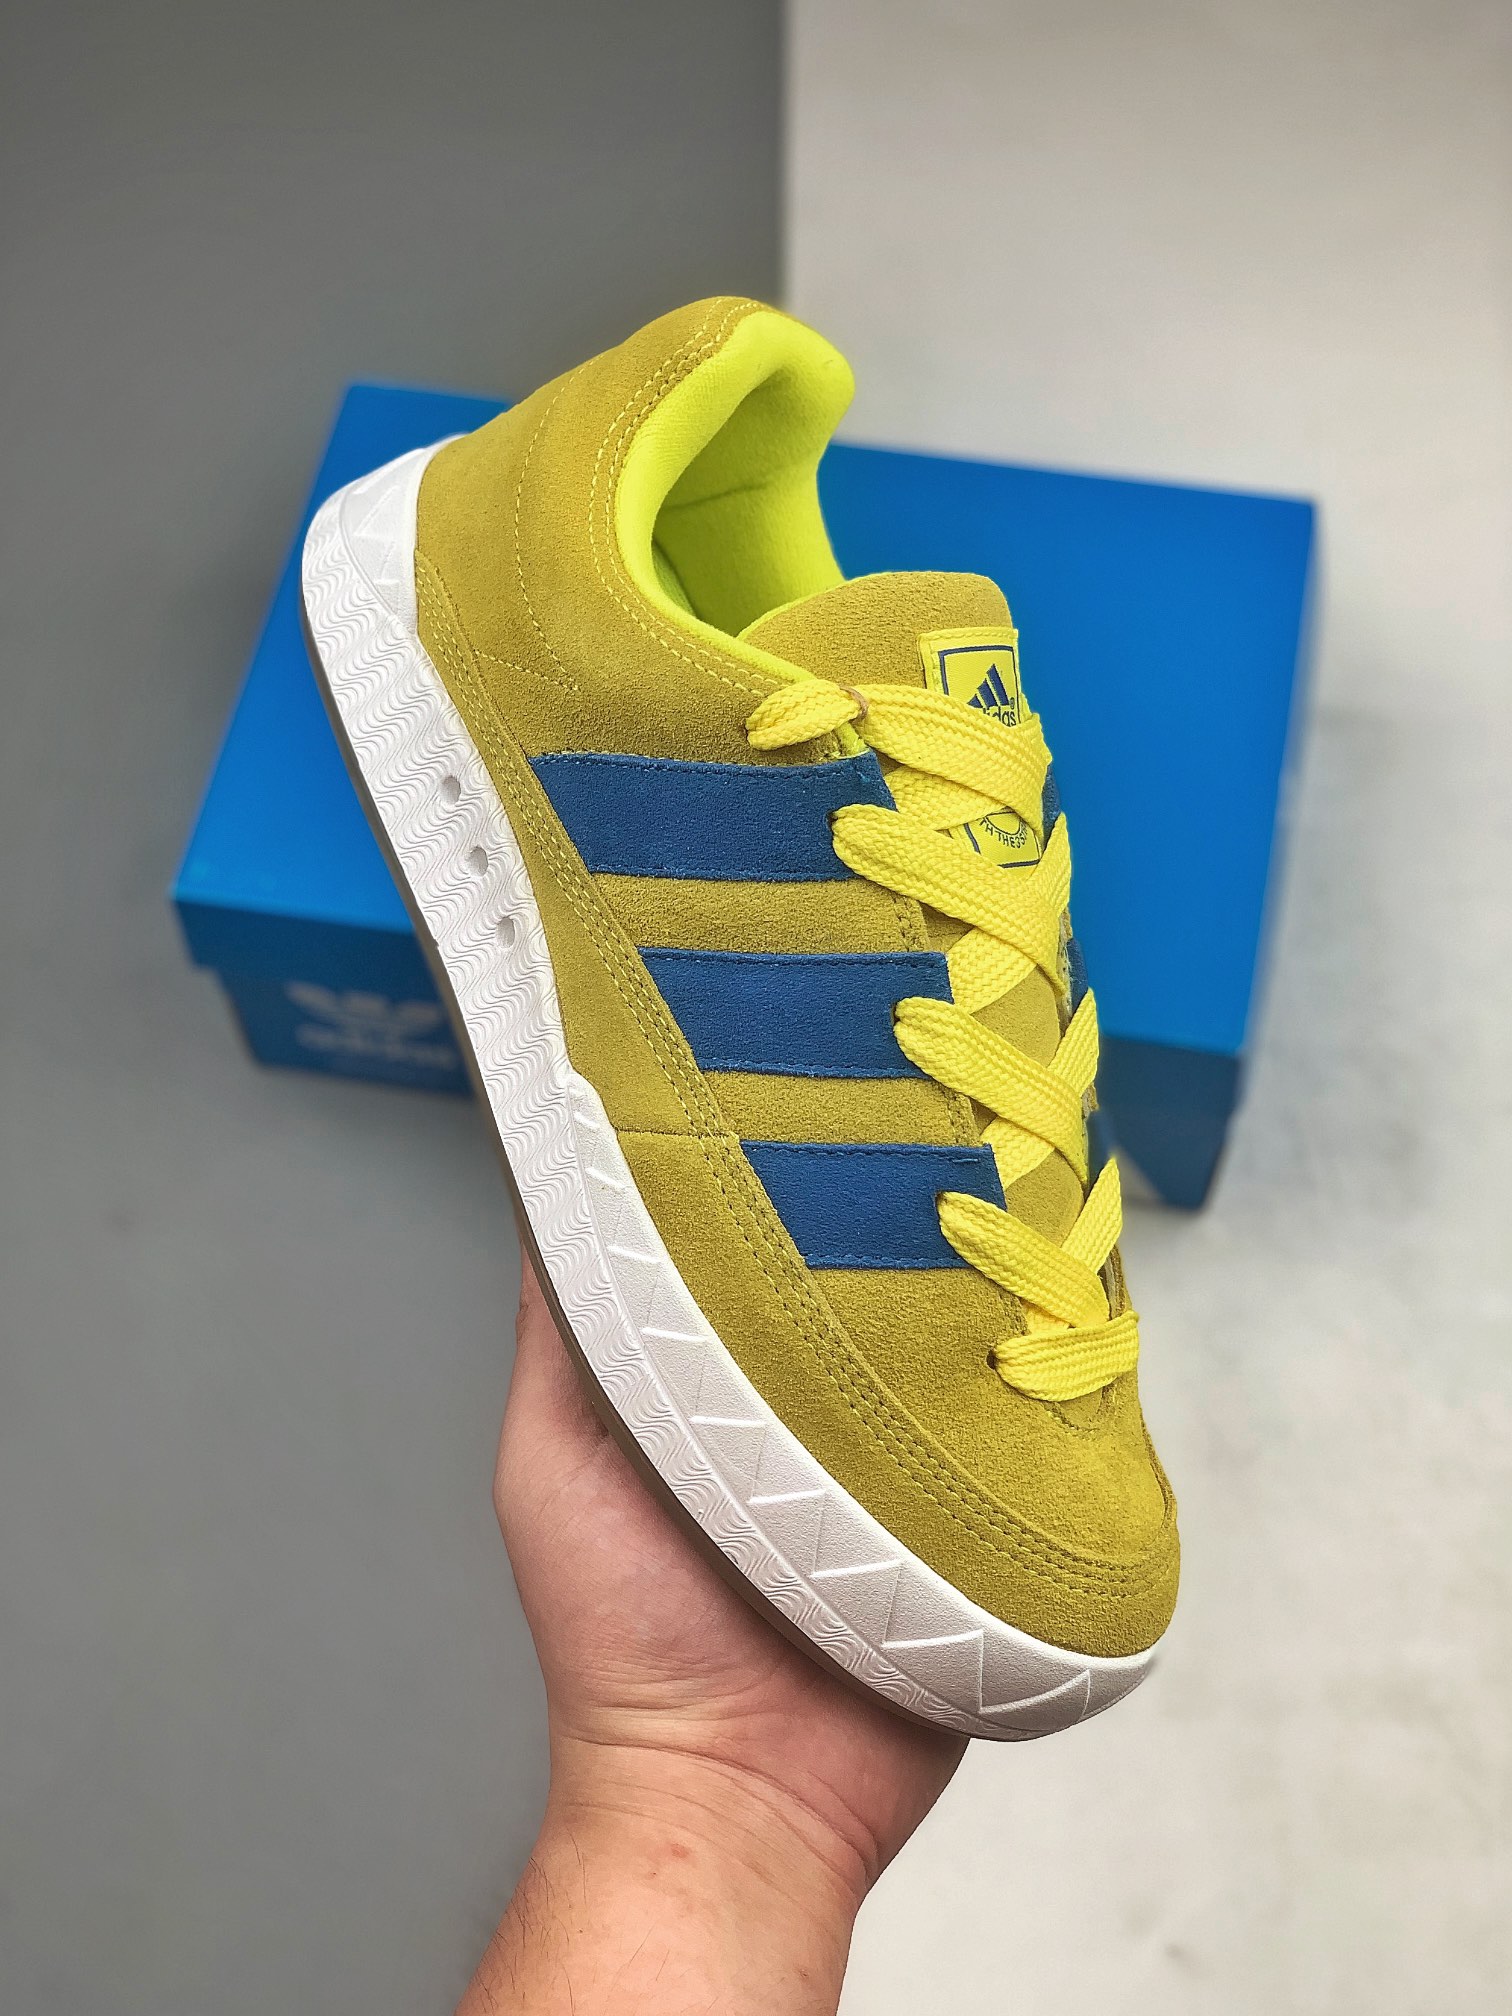 Adidas Adimatic Yellow GY2090: Stylish and Vibrant Athletic Shoes